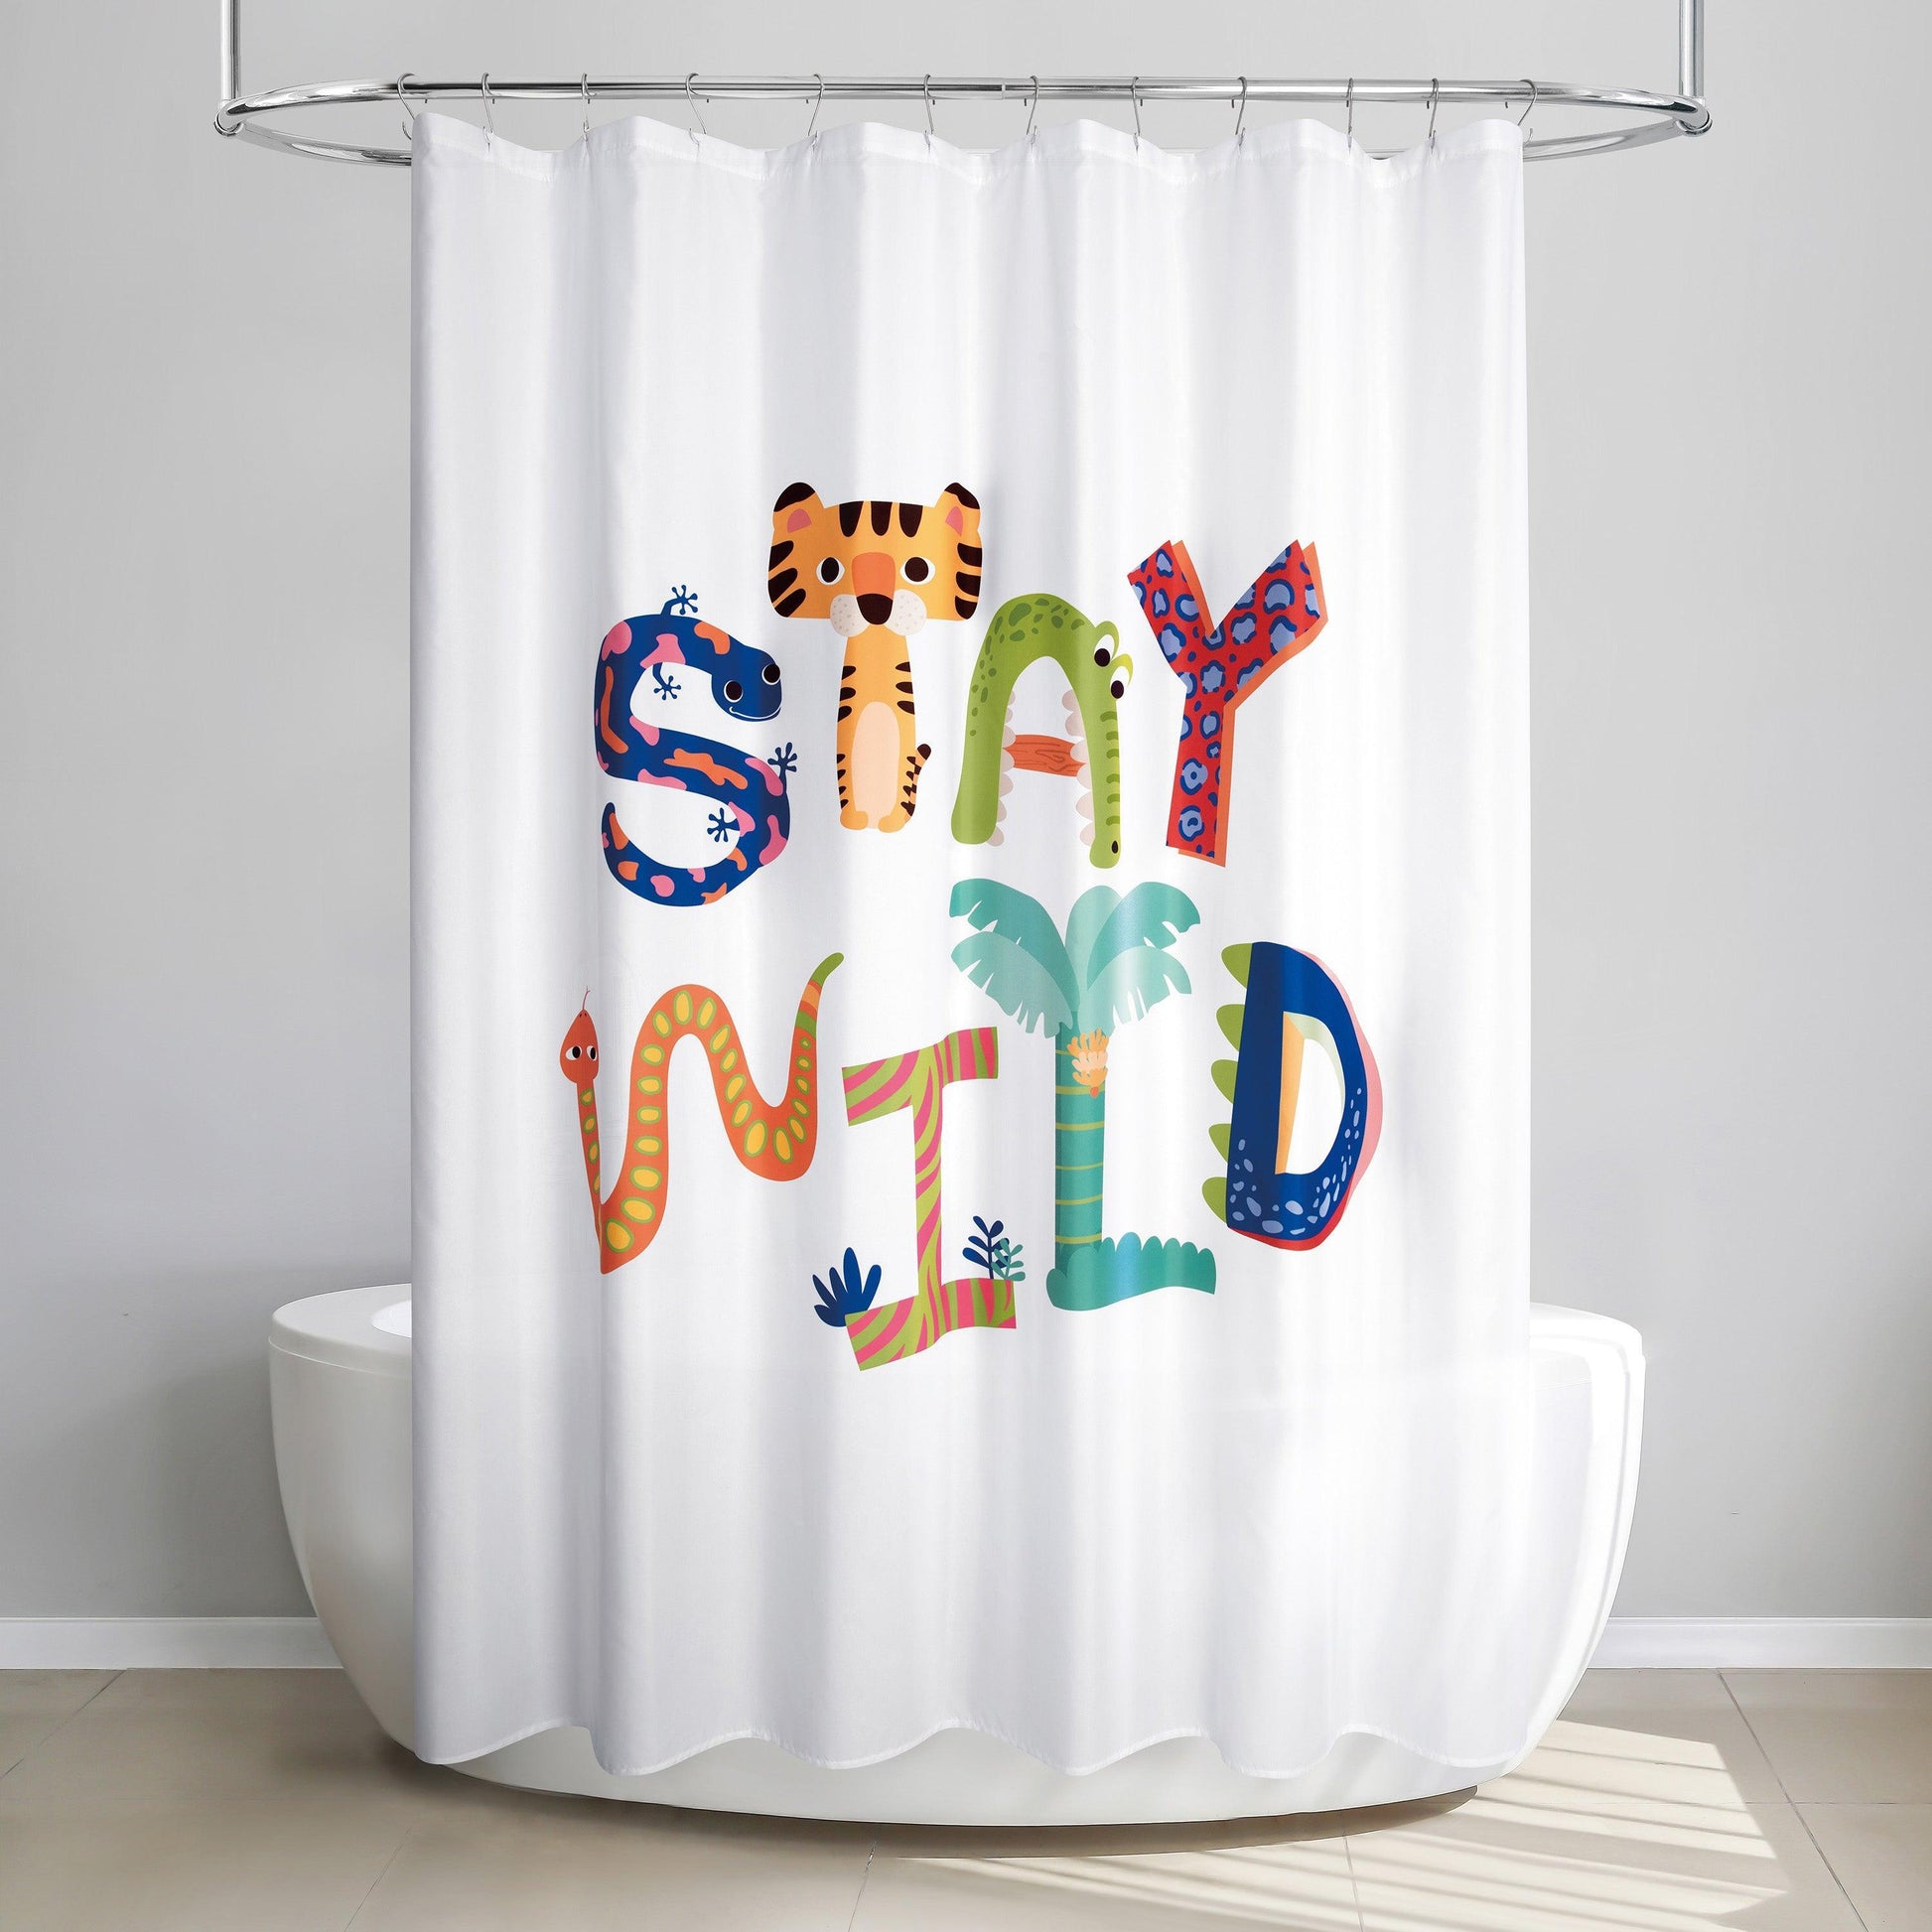 Wild Shower Curtain - Allure Home Creation